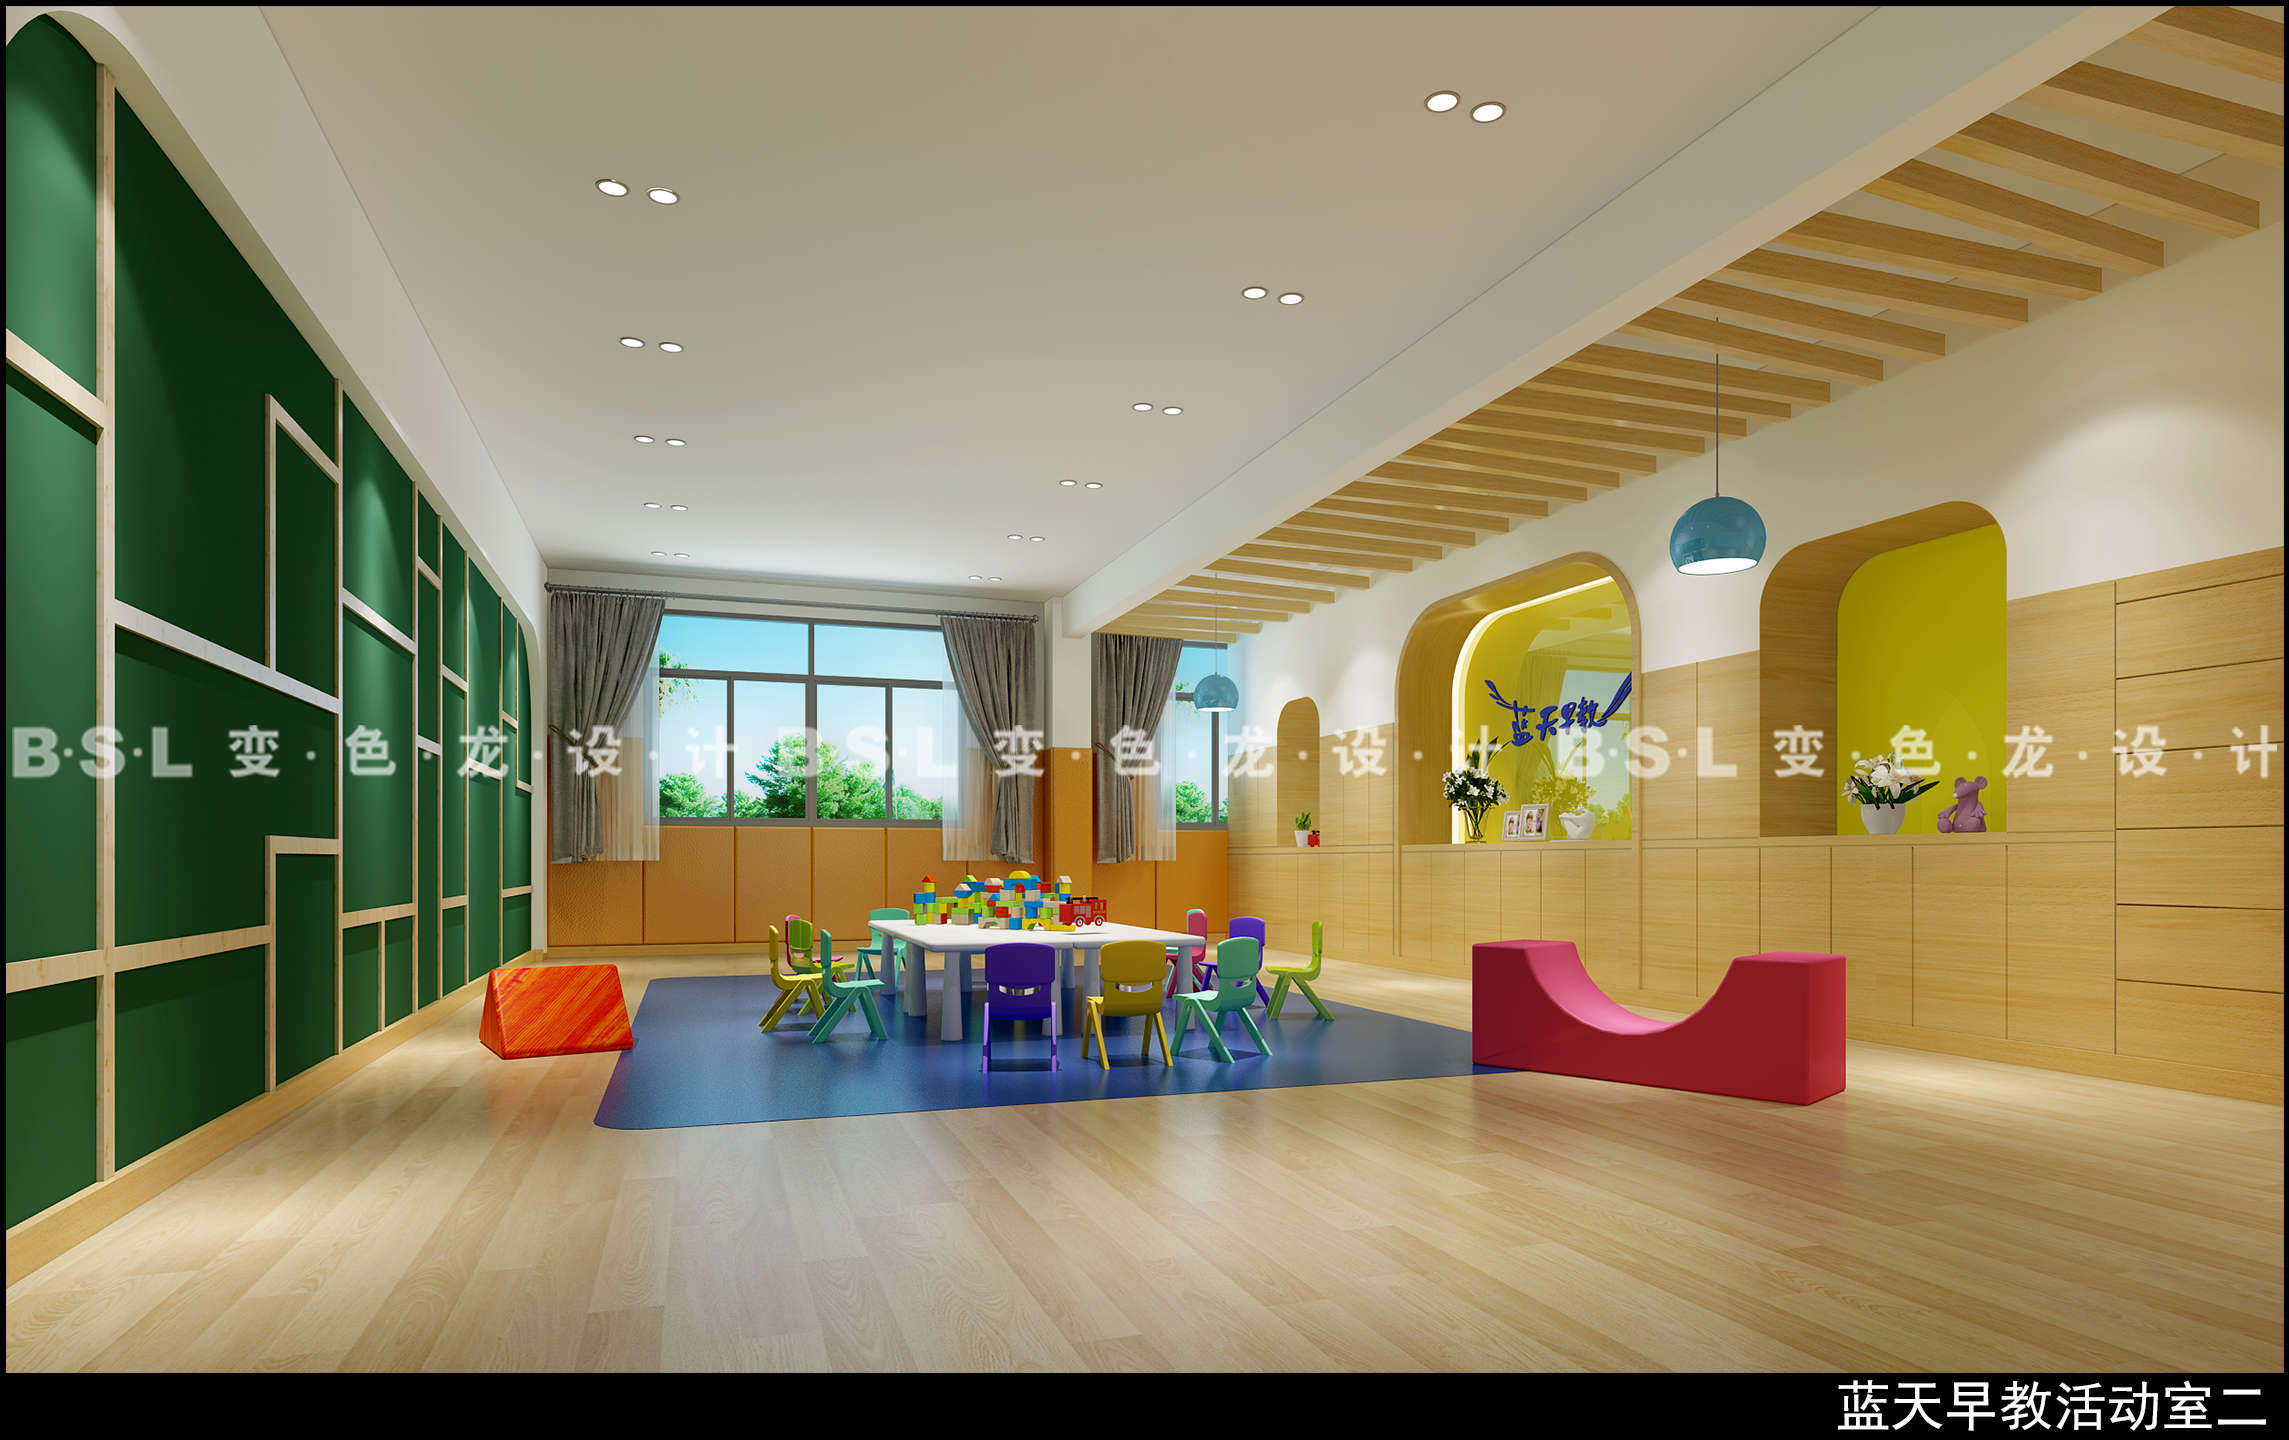 东莞蓝天幼儿园活动室-变色龙设计